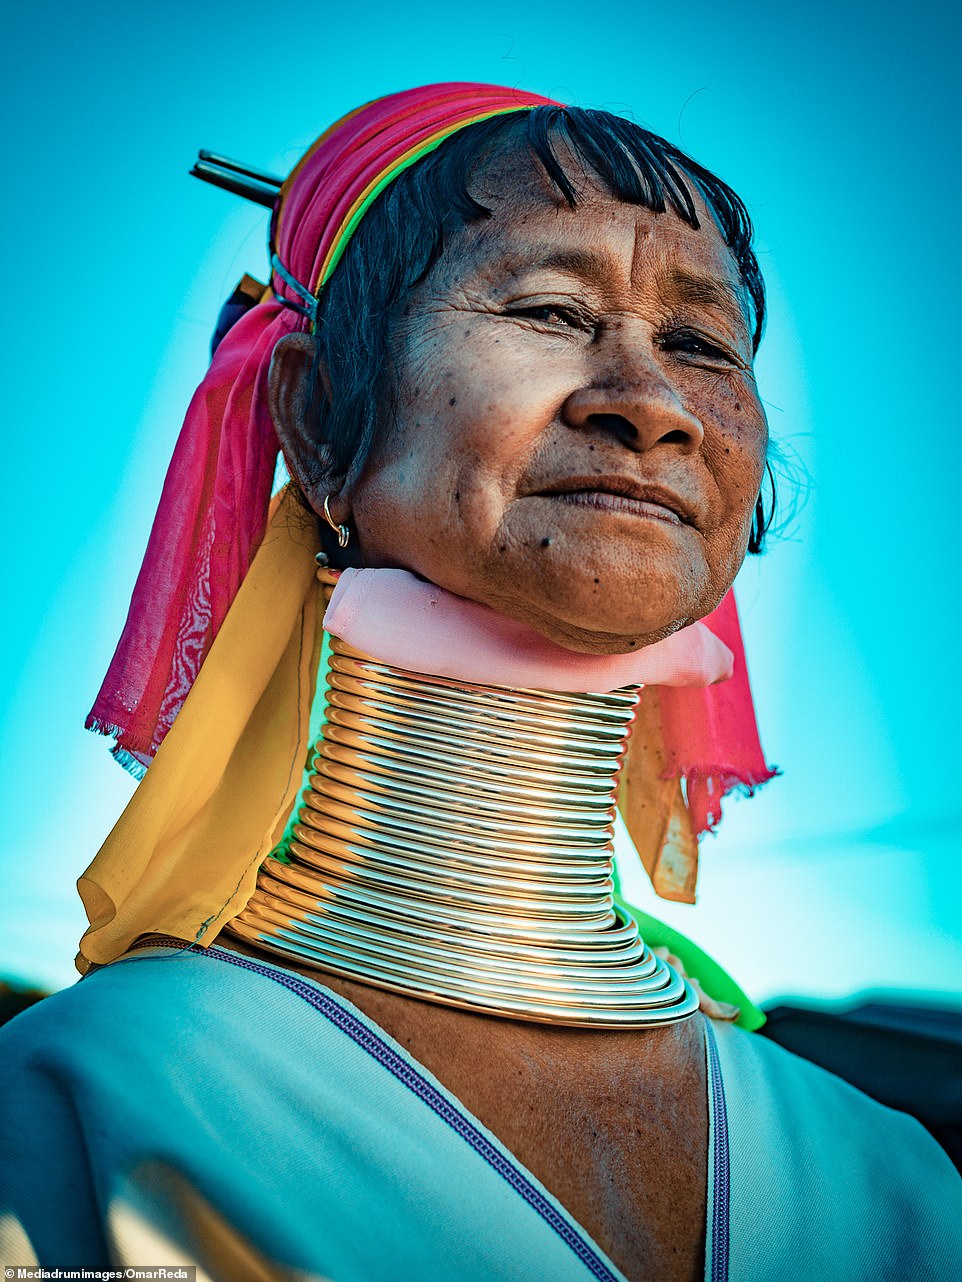 Женщины с длинными шеями из племени каян